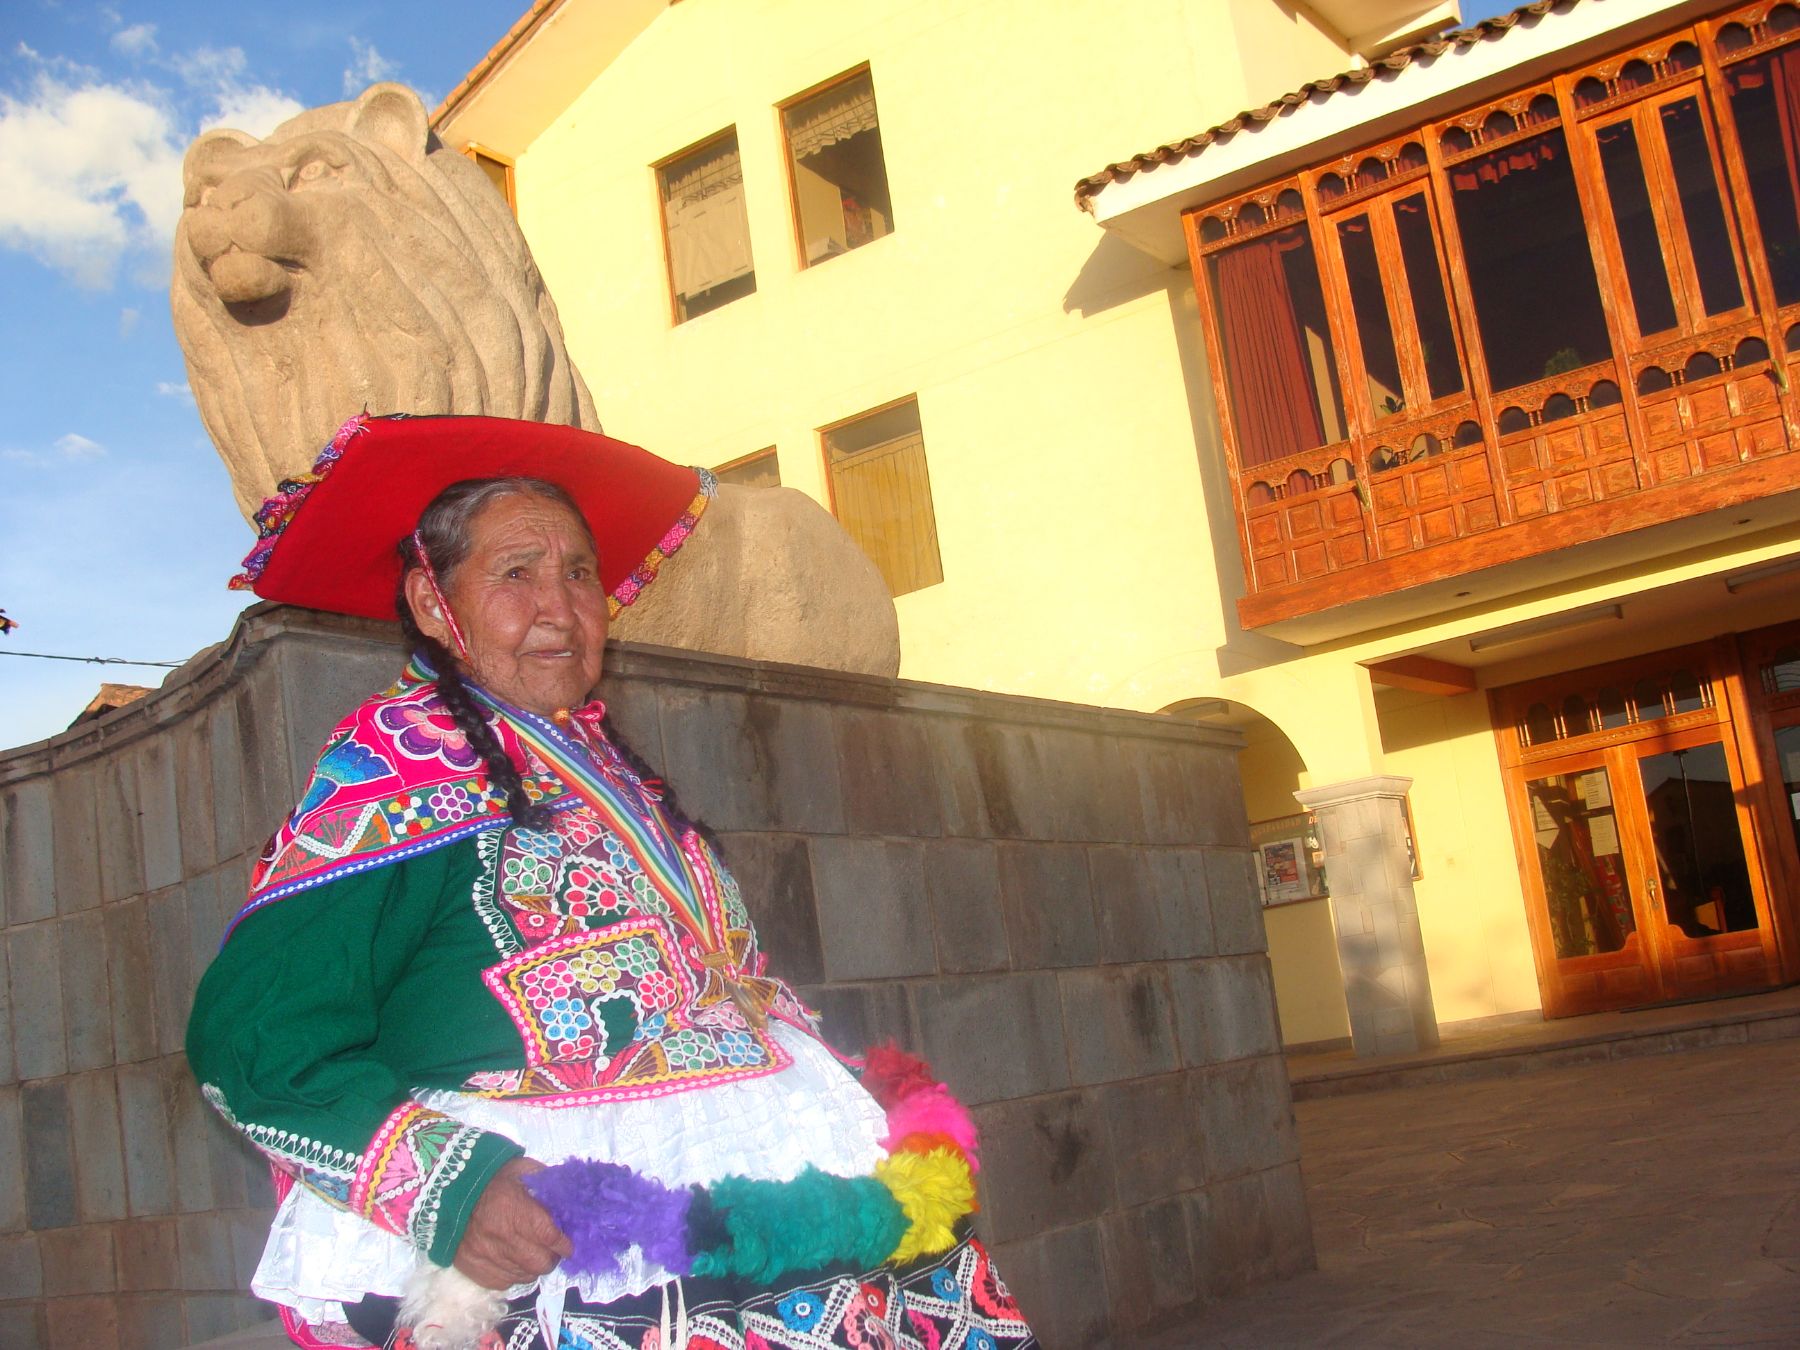 La cusqueña Isabel Atayupanqui Pachacútec, de 86 años, es la última descendiente del inca Pachacútec Cusi Yupanqui. Foto: ANDINA / Fernando Zora-Carvajal.